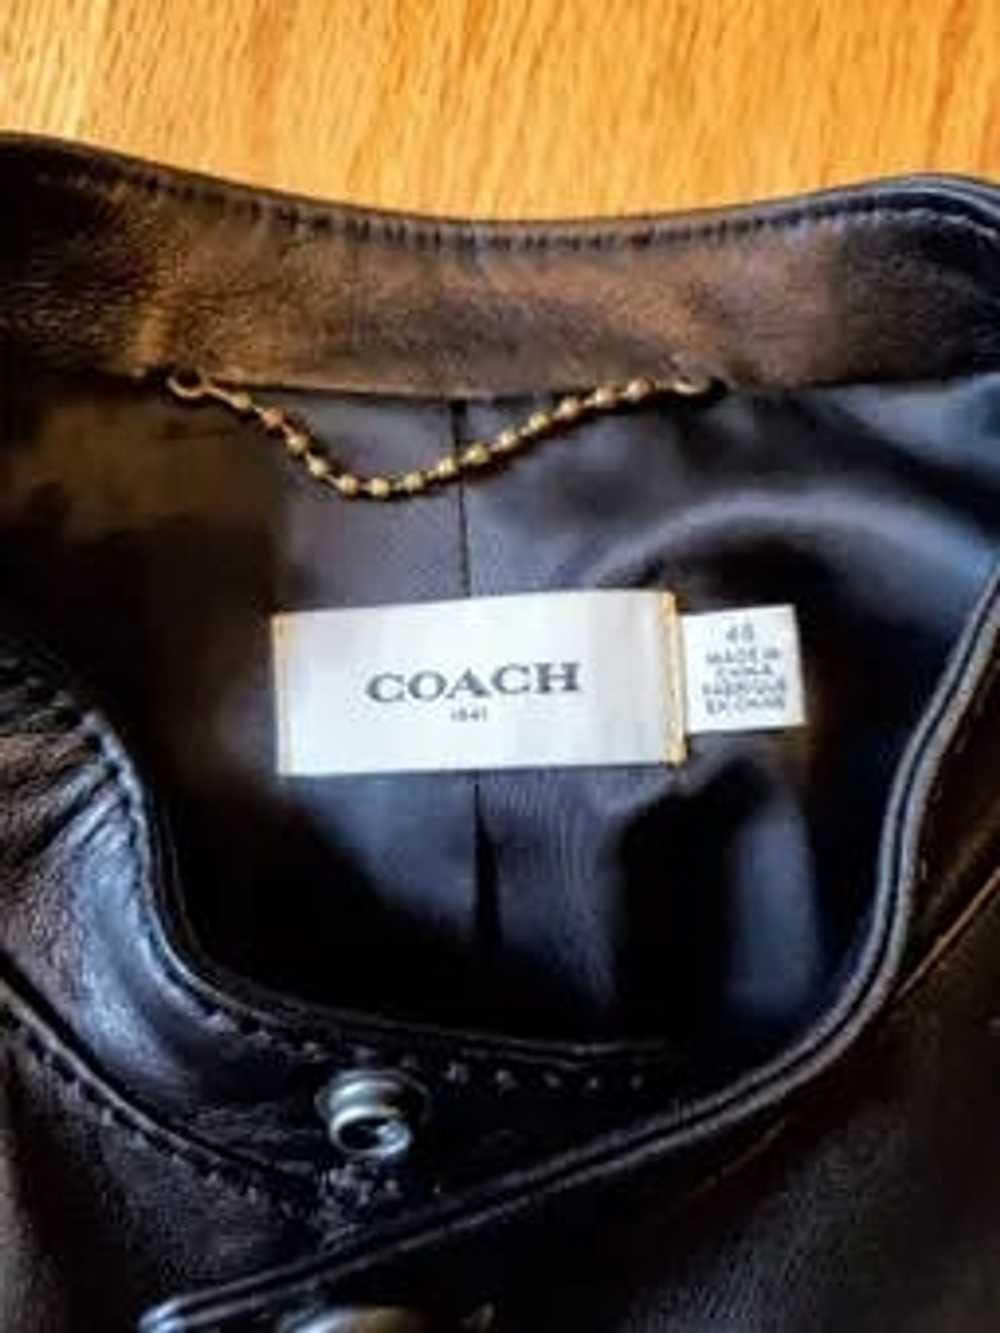 Coach Coach Leather Café Racer Jacket - image 5